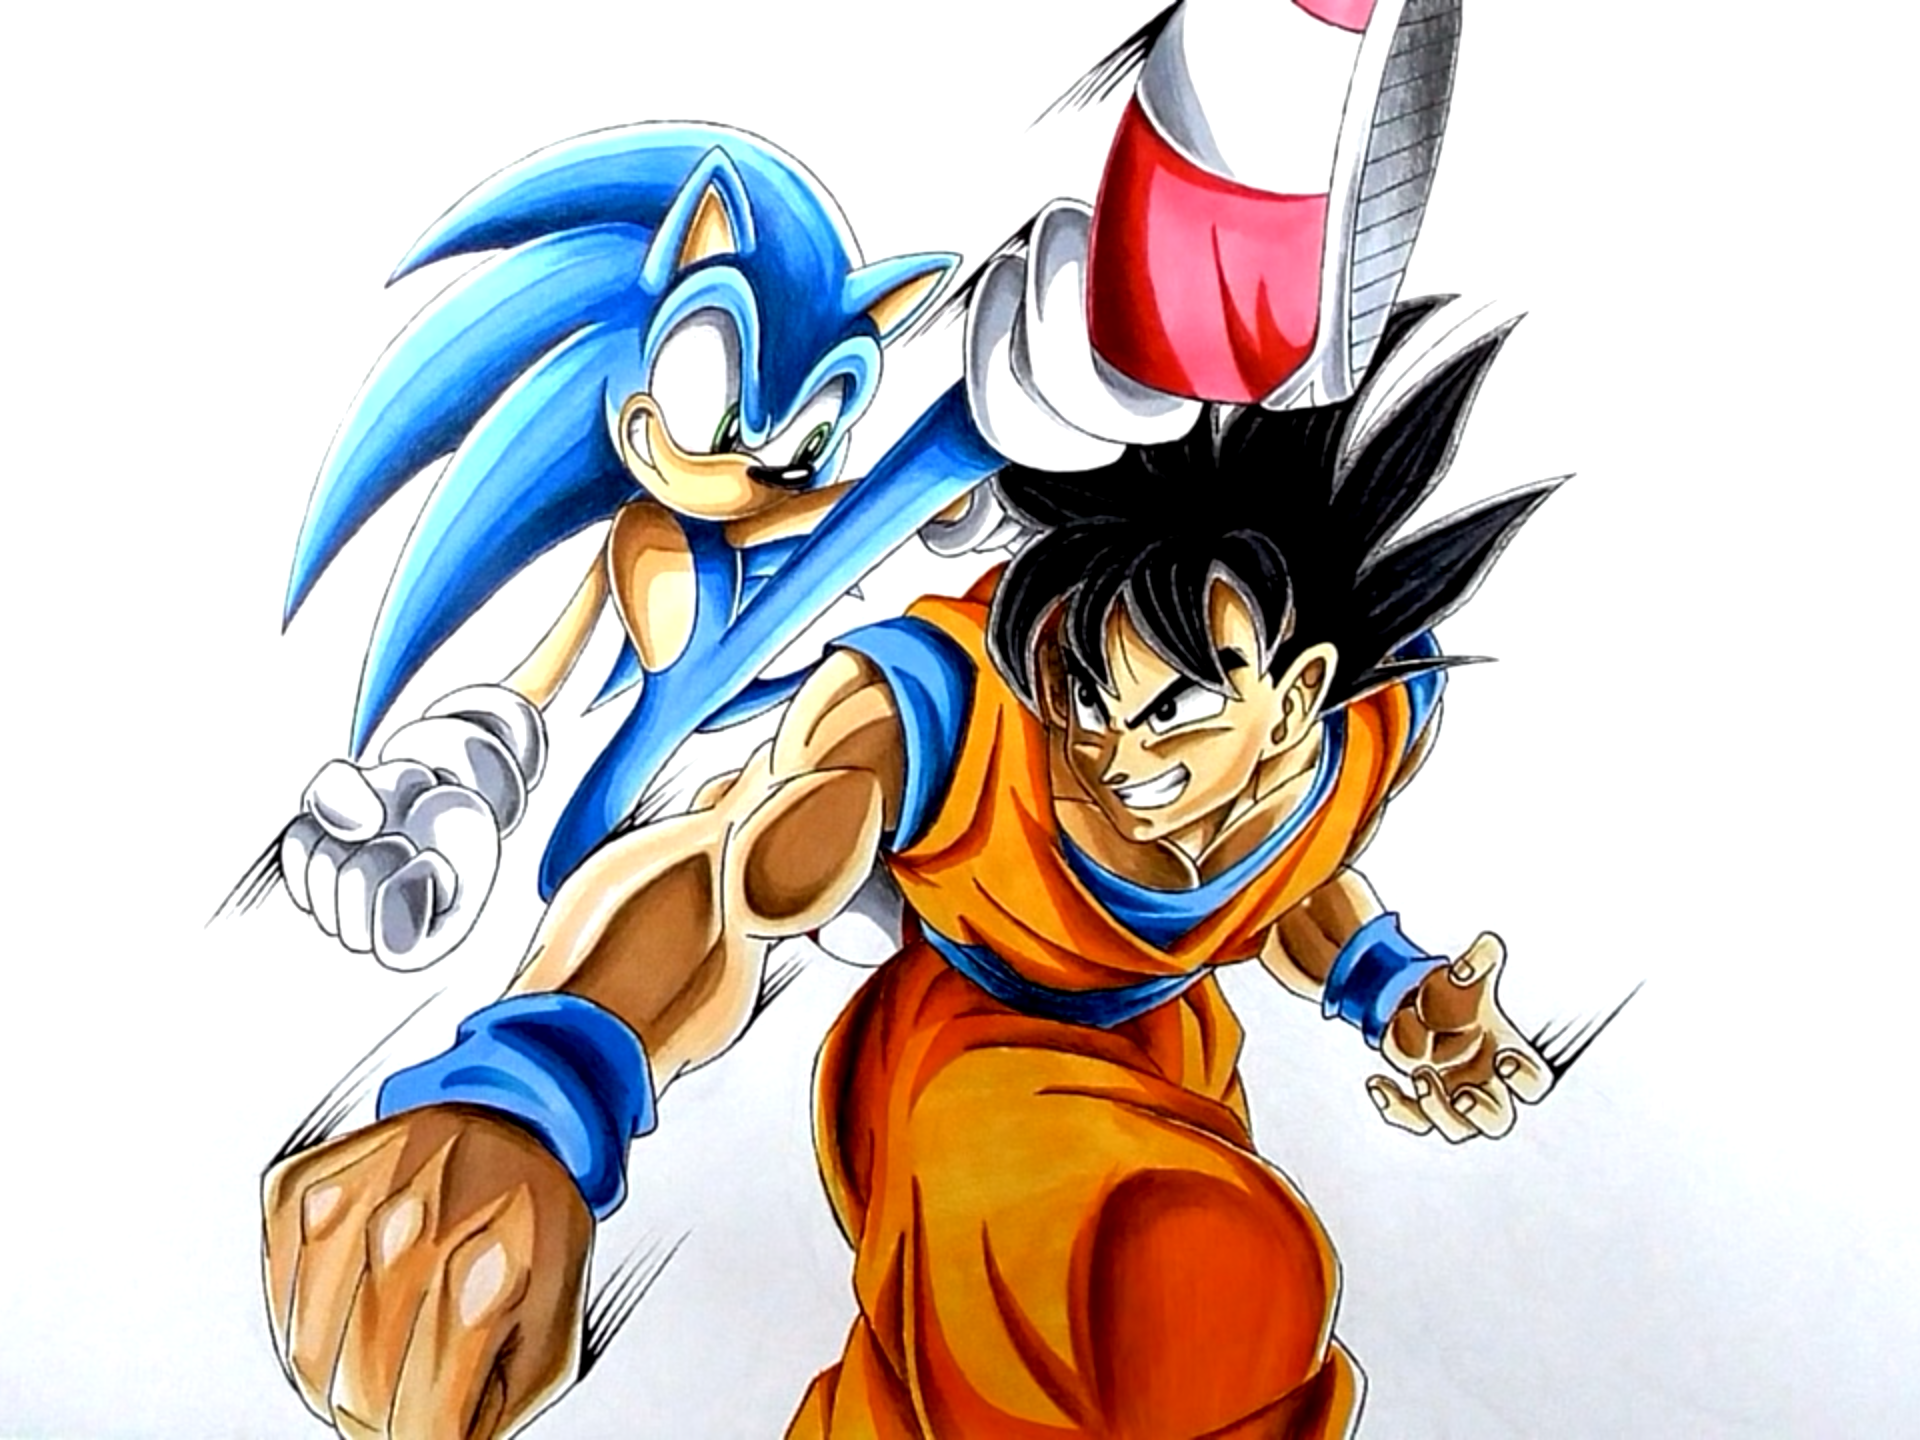 Goku vs. Sonic made